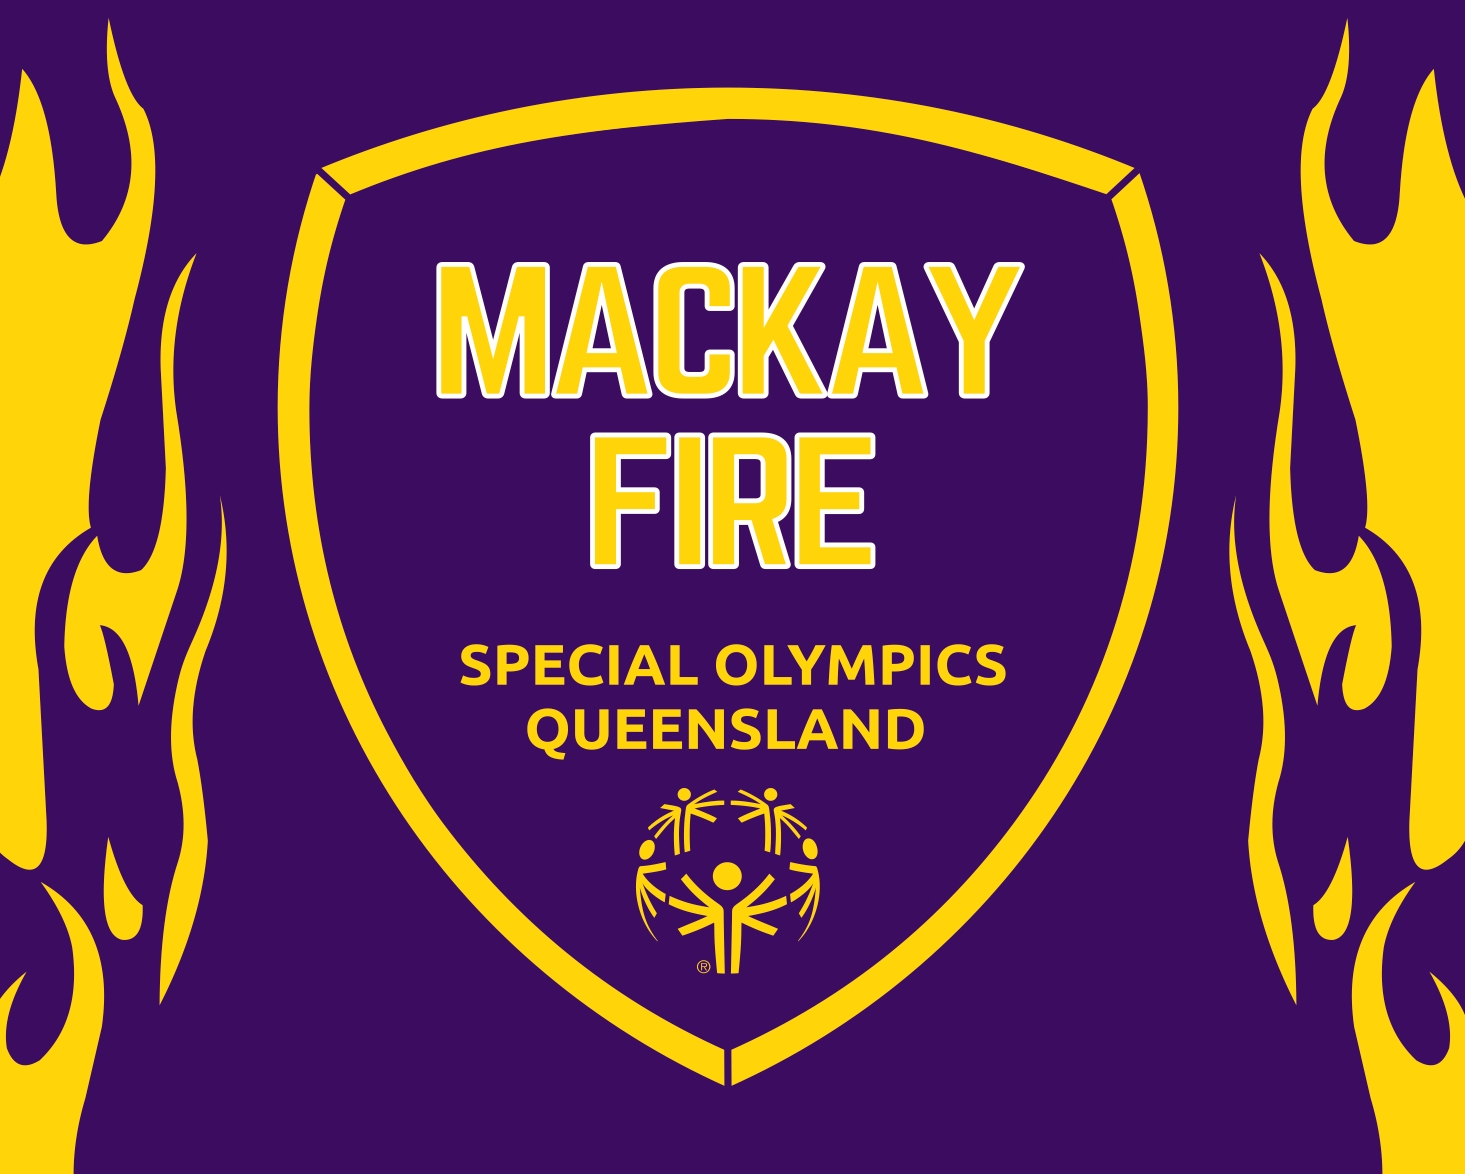 Special Olympics Mackay Fire